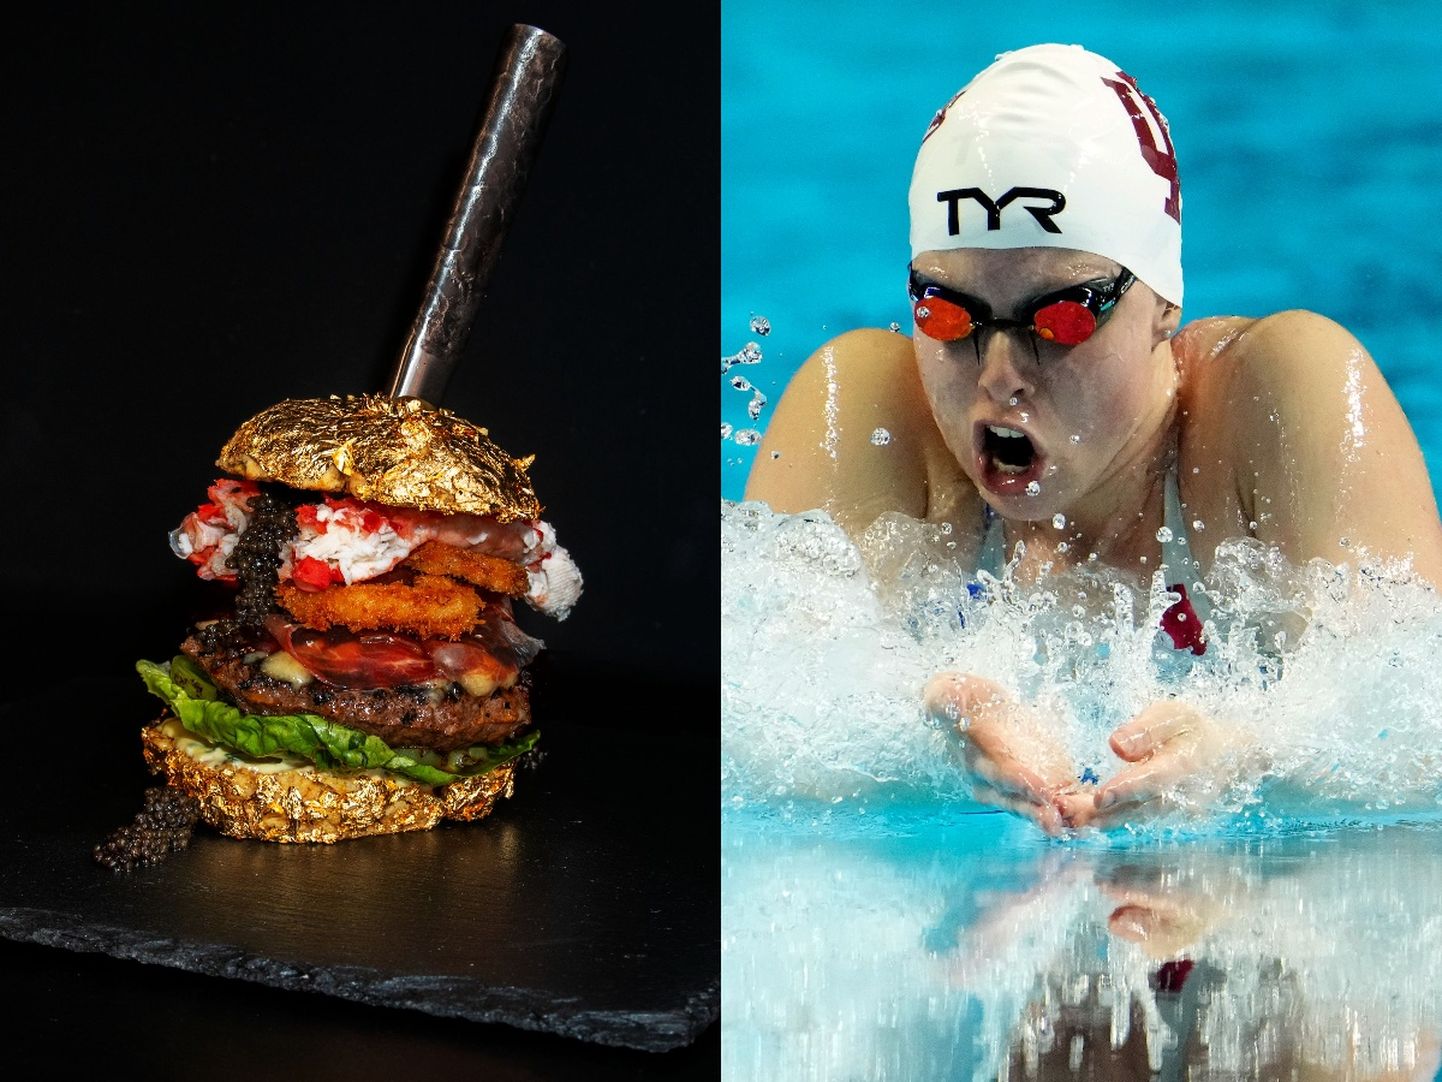 USA ujumistäht Lilly King oli pettunud, kui kuulis, et olümpiakülas burgereid ei pakuta.